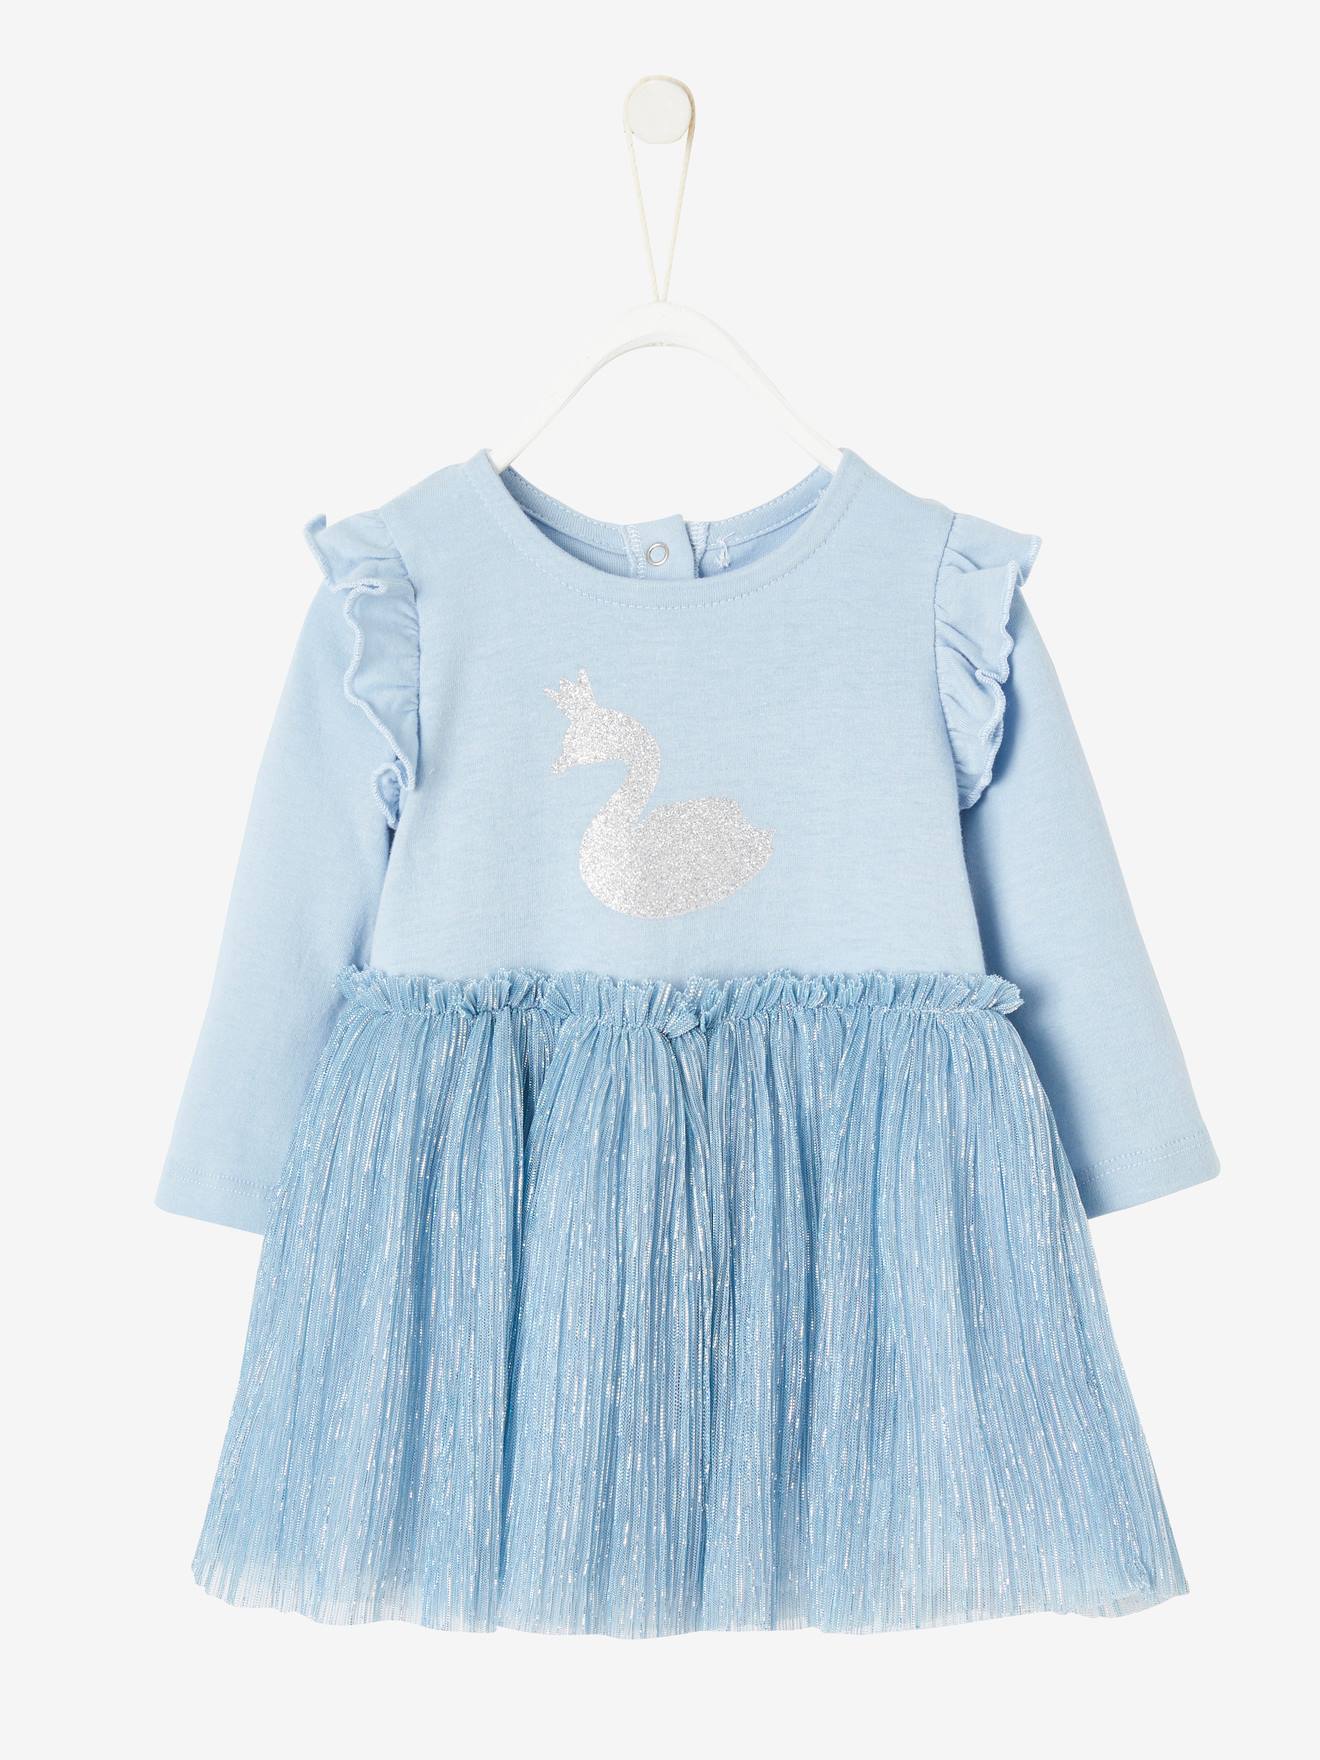 Baby & Kind Babyartikel Babykleidung Babykleider 73006 Disney Minnie Mouse Kleid Mädchen Blau 